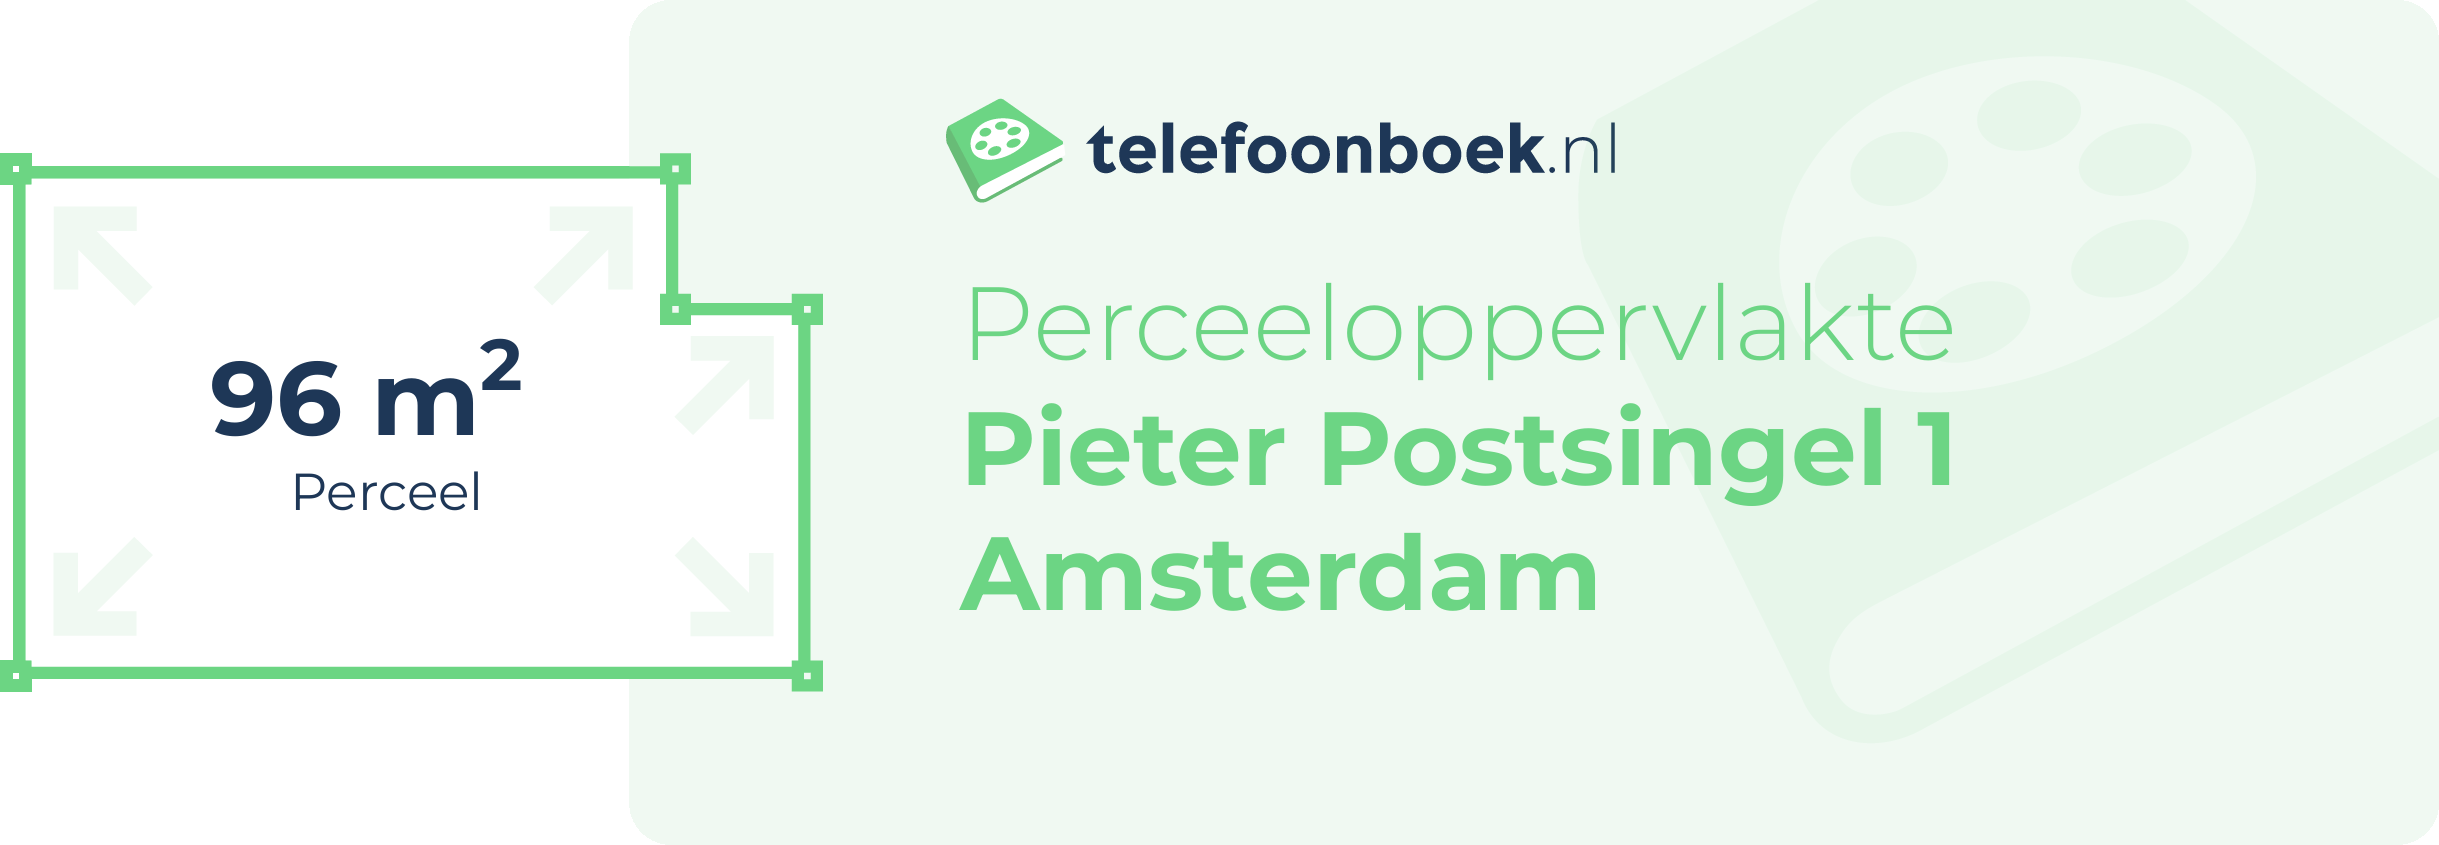 Perceeloppervlakte Pieter Postsingel 1 Amsterdam